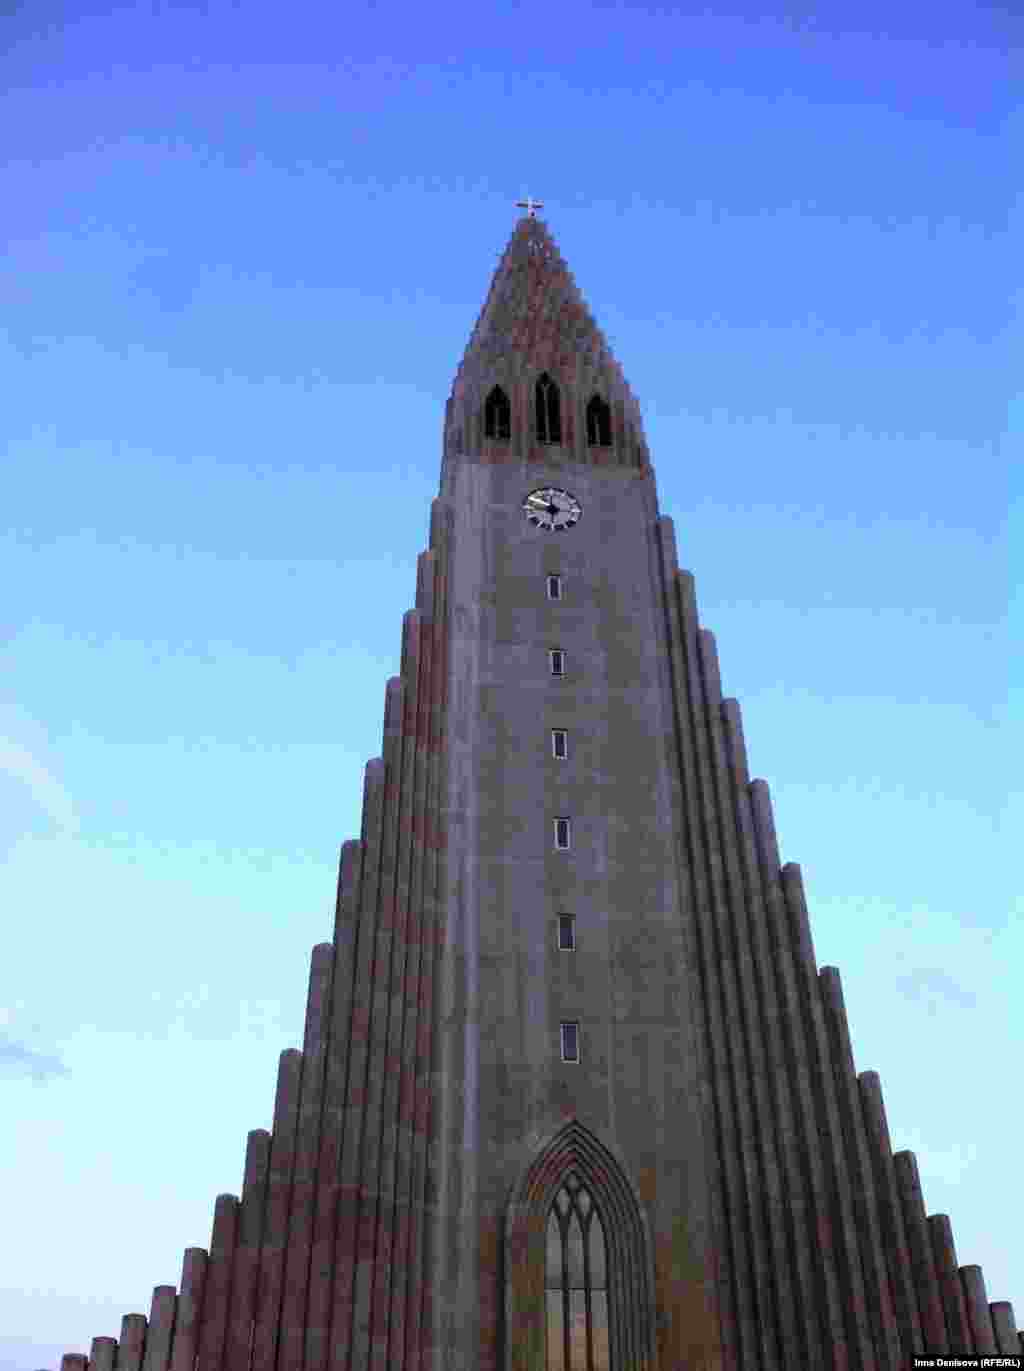 Так выглядит колокольня лютеранского собора Хадльнримскрирхья, главного в Рейкъявике -архитектор задумывал сделать что-то похожее на извержение вулкана. Внутри церкви - орган высотой 15 метров и весом в 25 тонн.&nbsp;